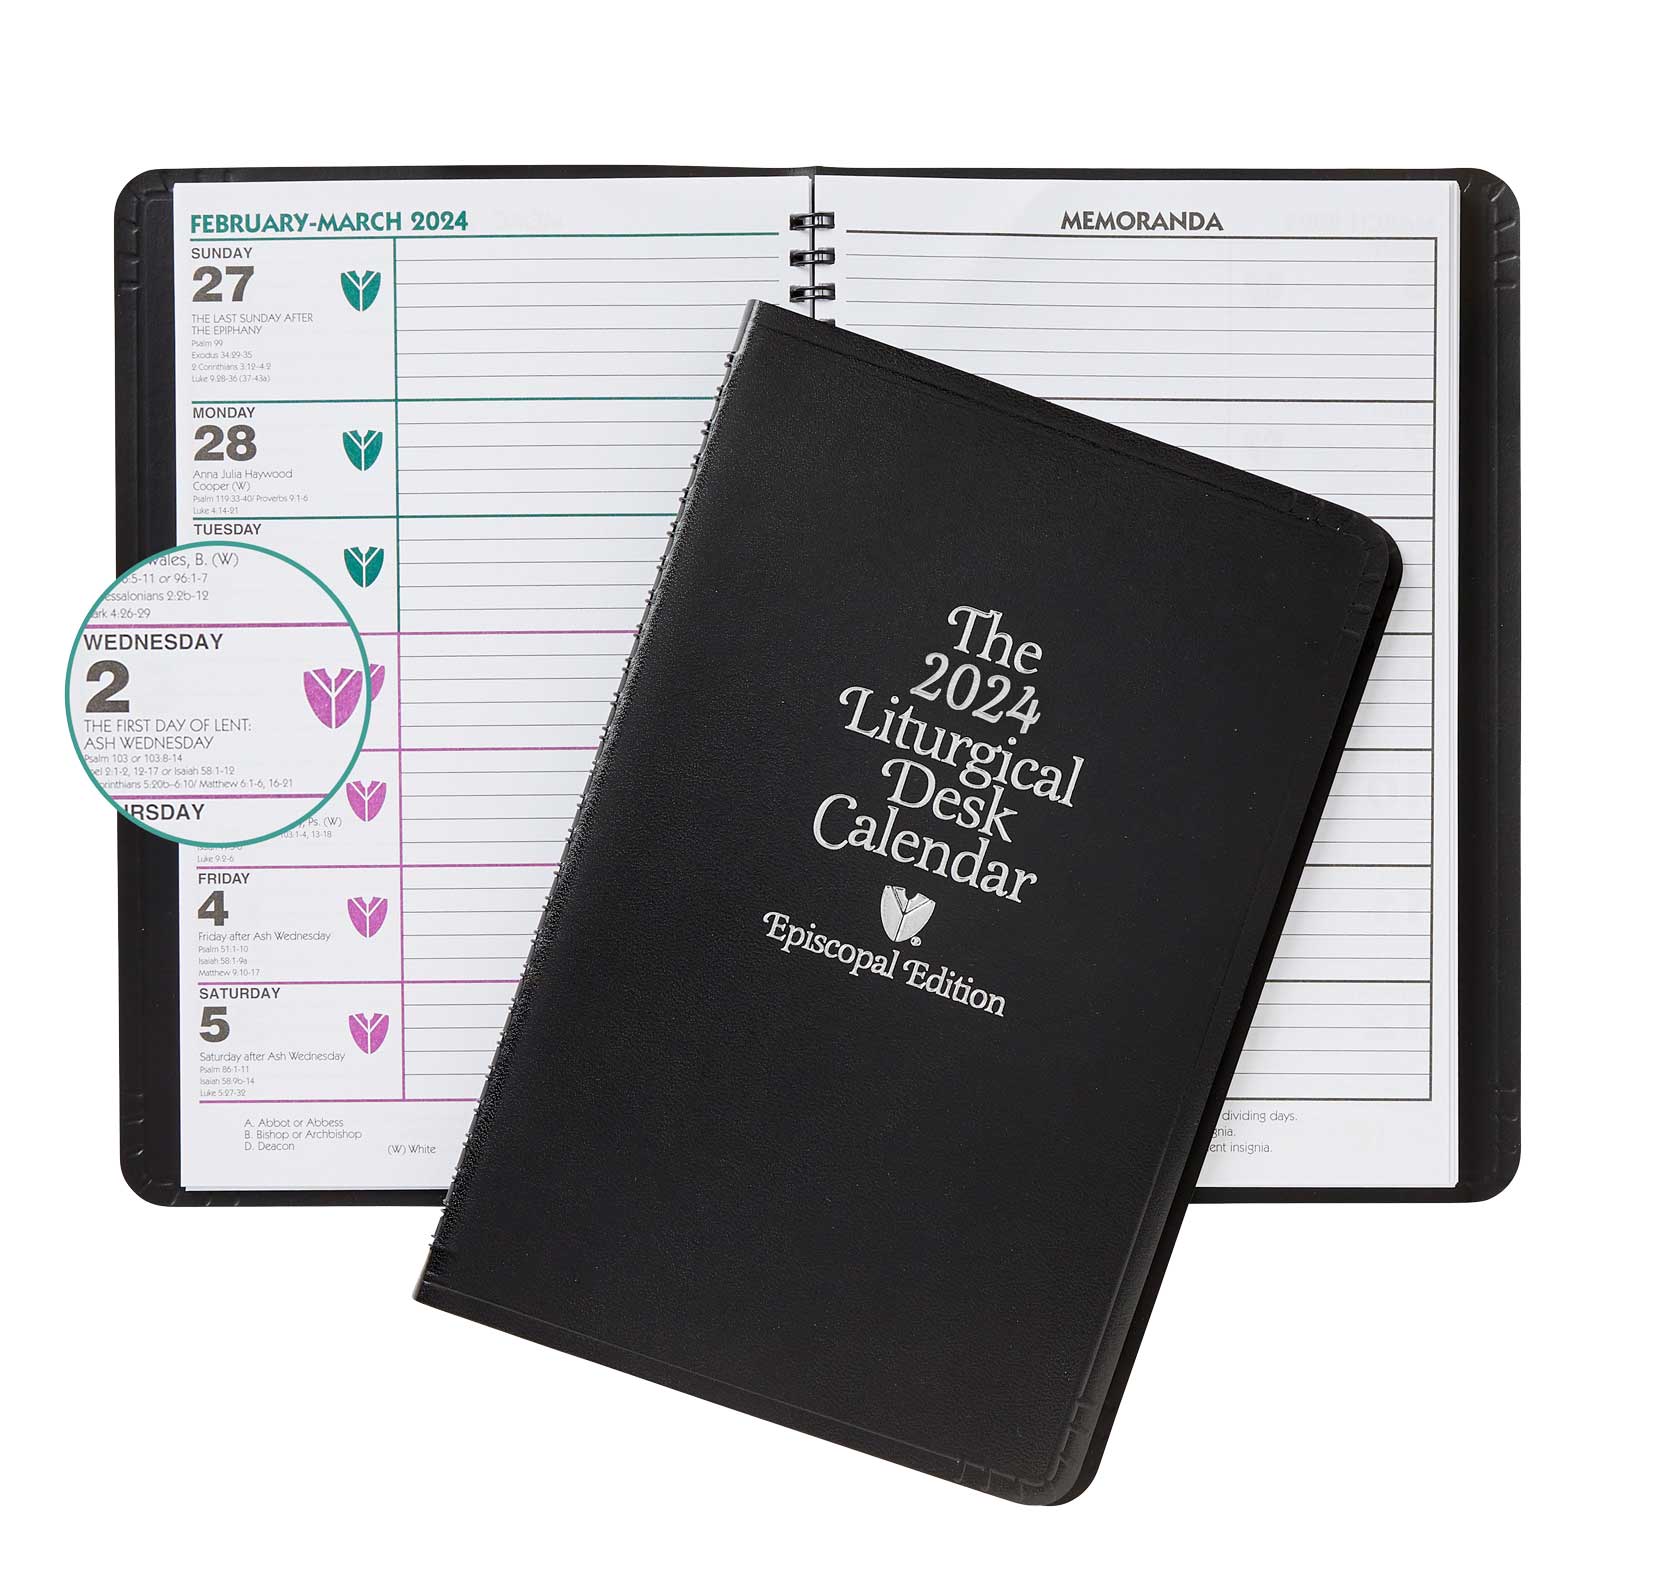 Even Year Liturgical Desk Calendar - Episcopal